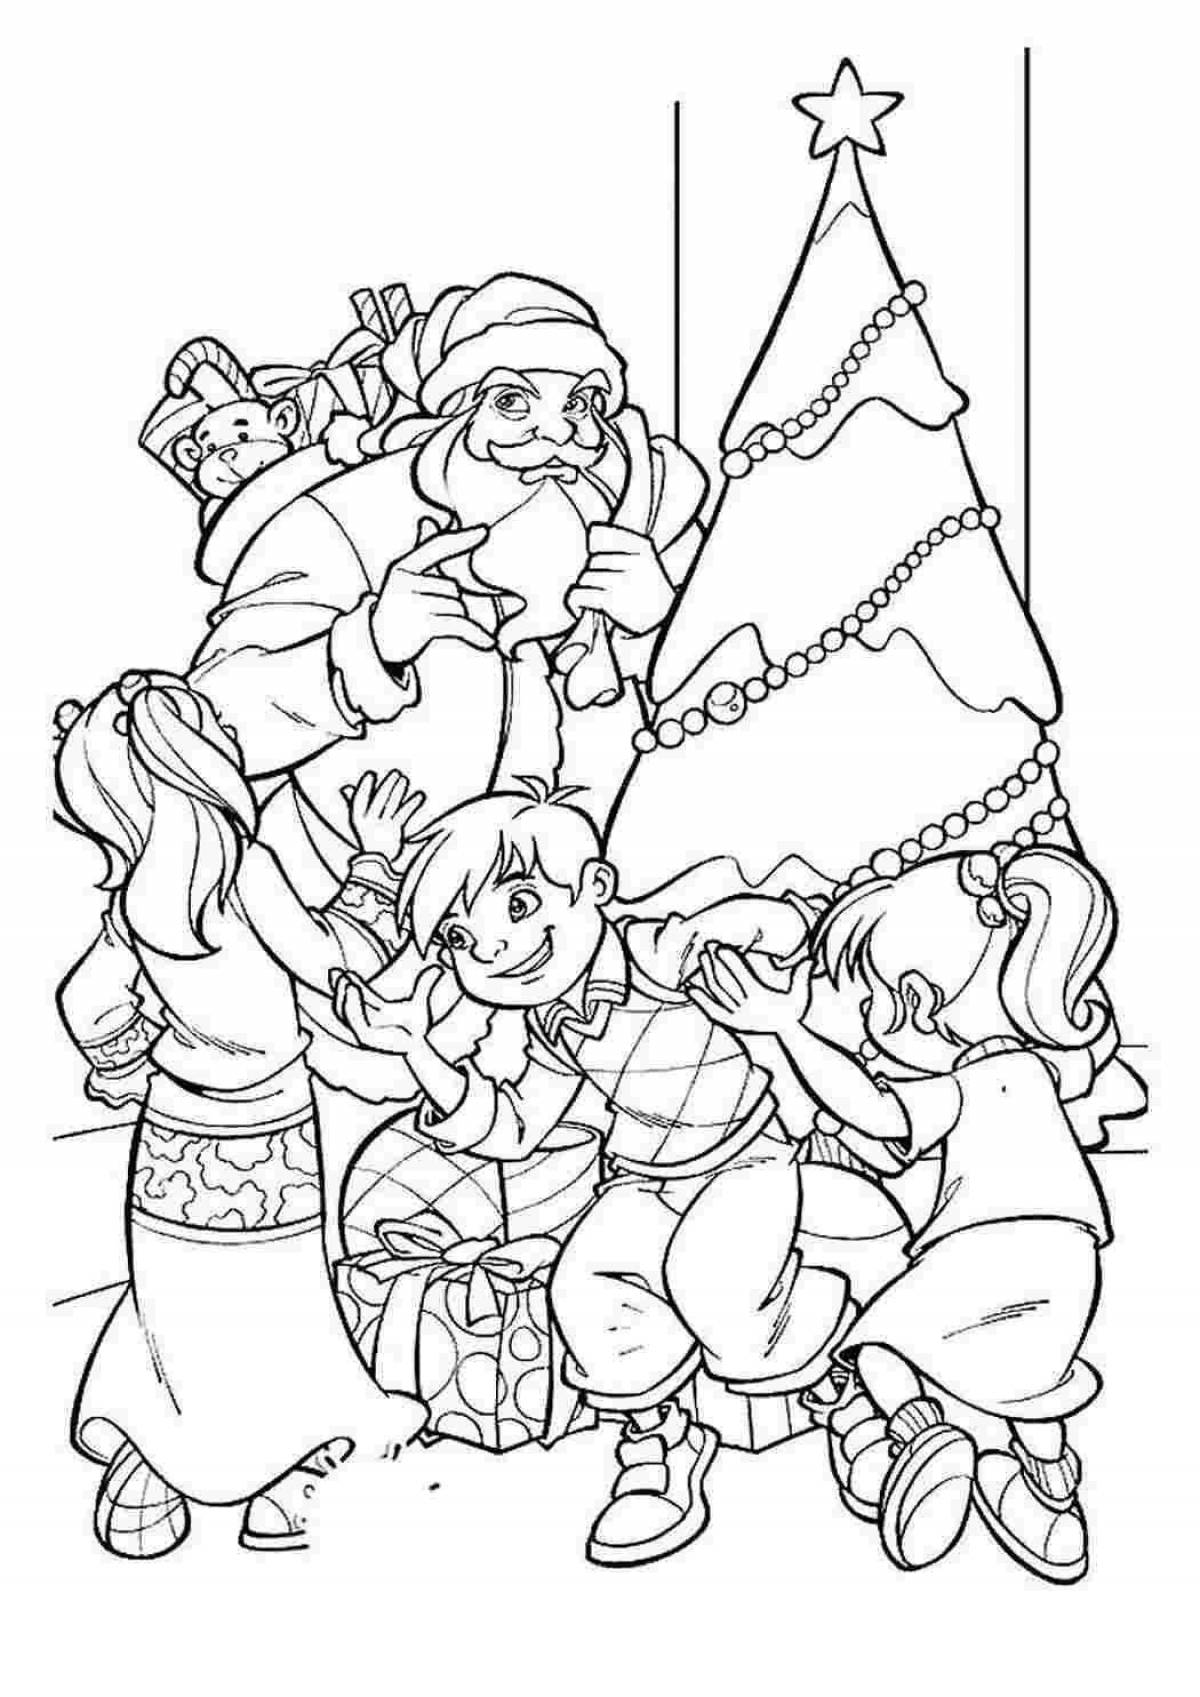 Coloring page wild santa claus